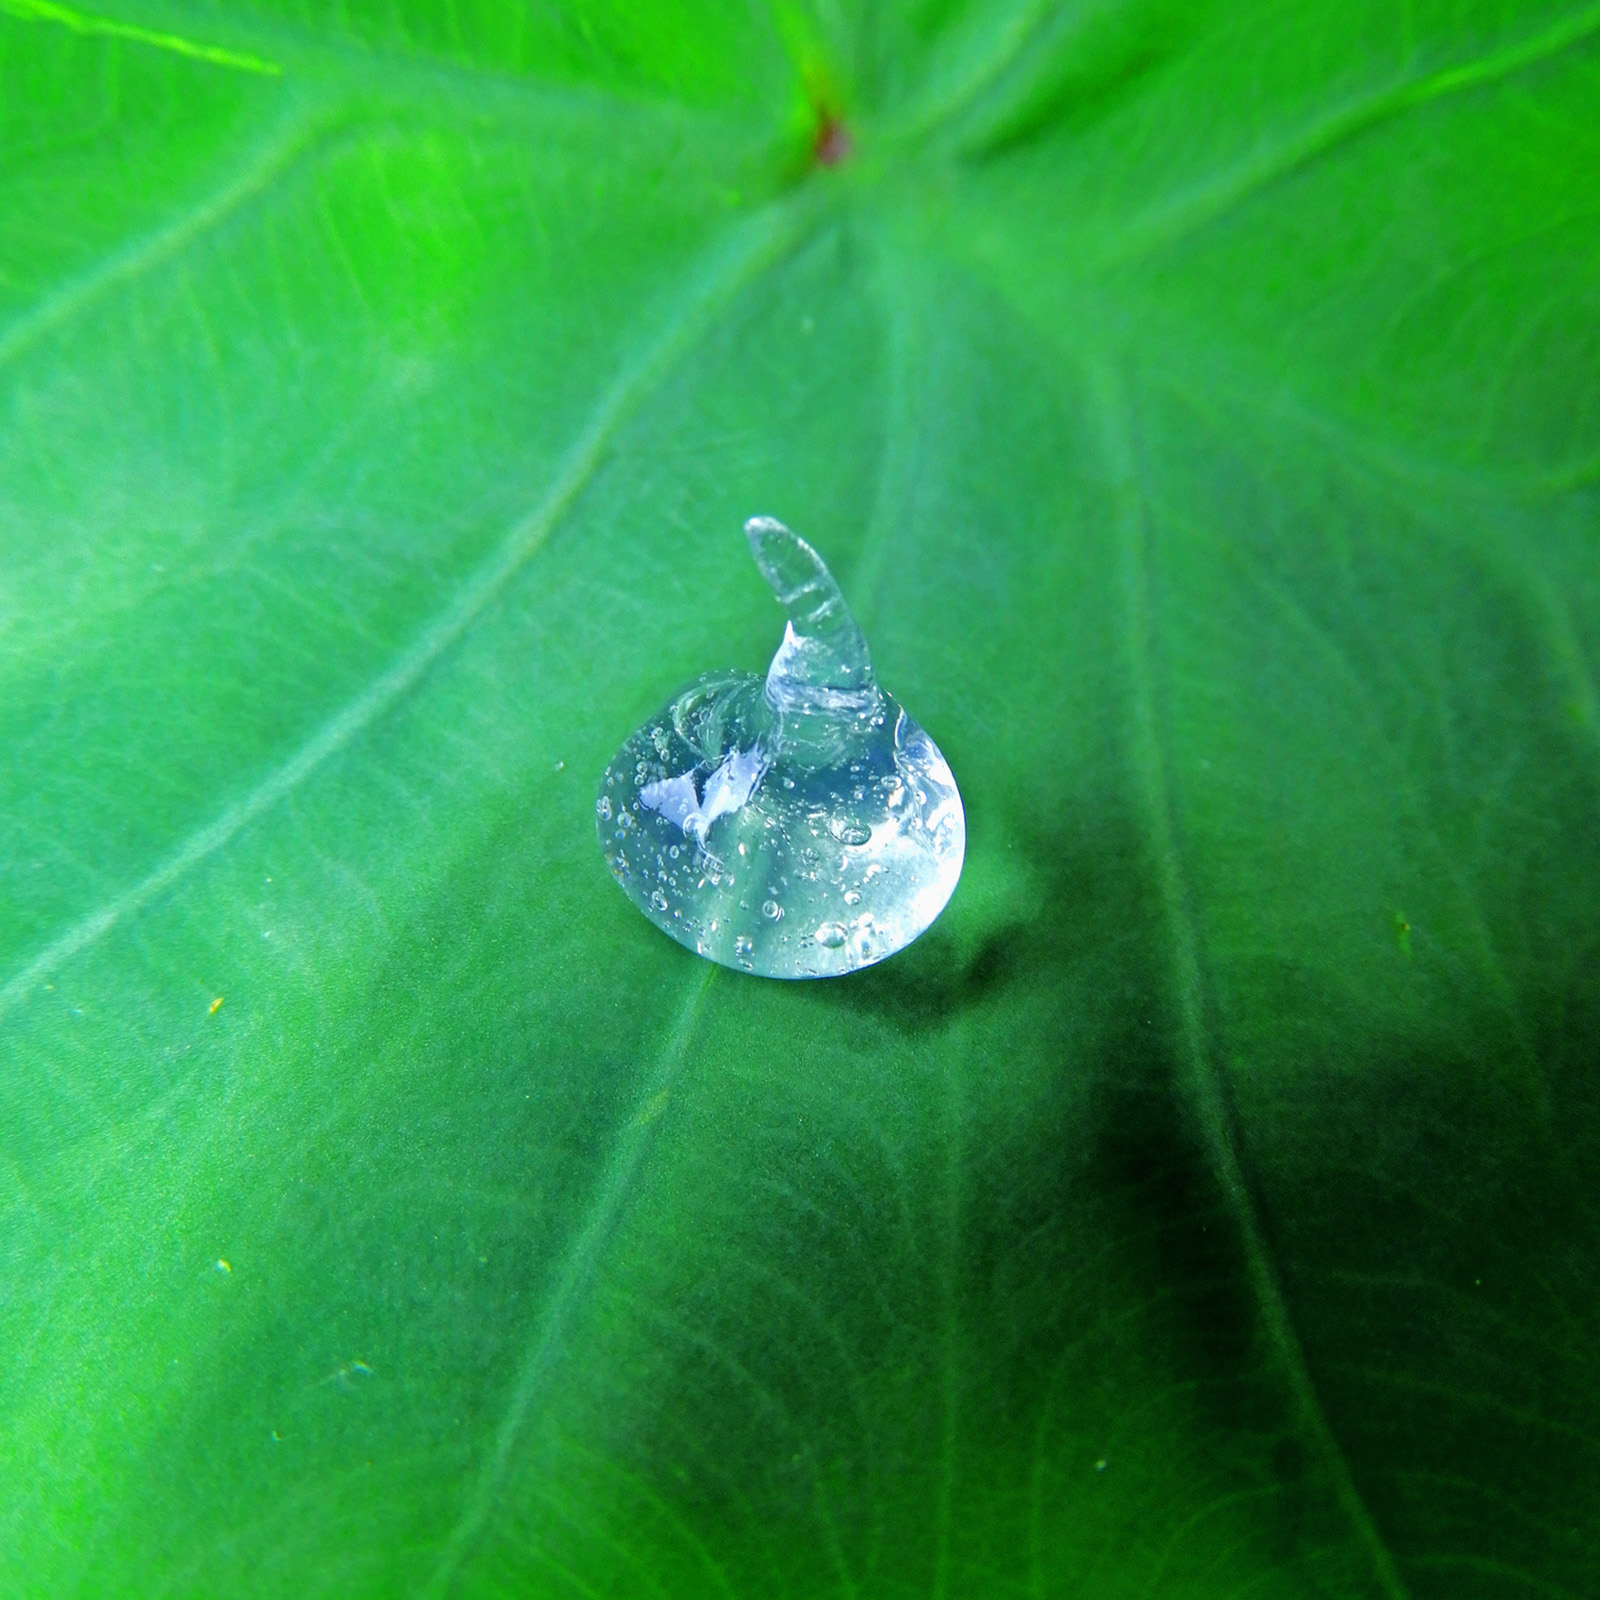 Las hojas del loto: el secreto detrás de un nuevo material biomédico |  I'MNOVATION